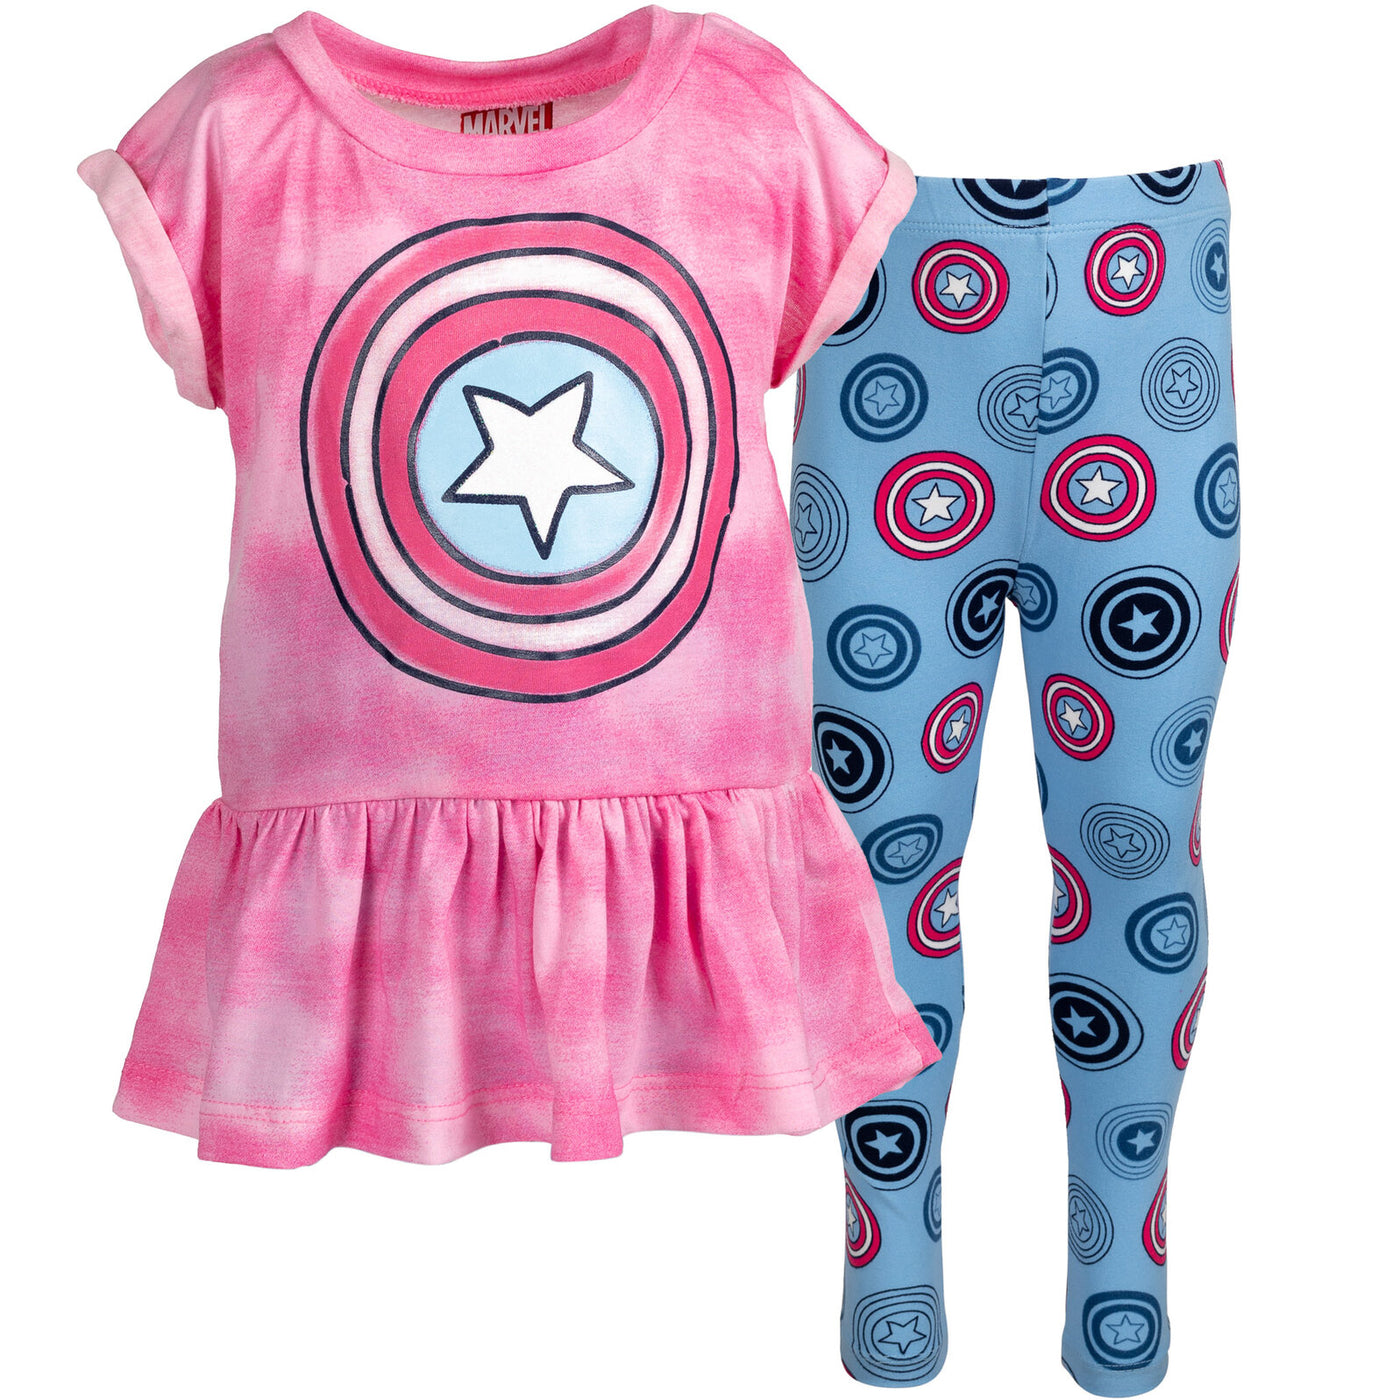 Marvel Avengers Captain America Peplum T-Shirt and Leggings Outfit Set